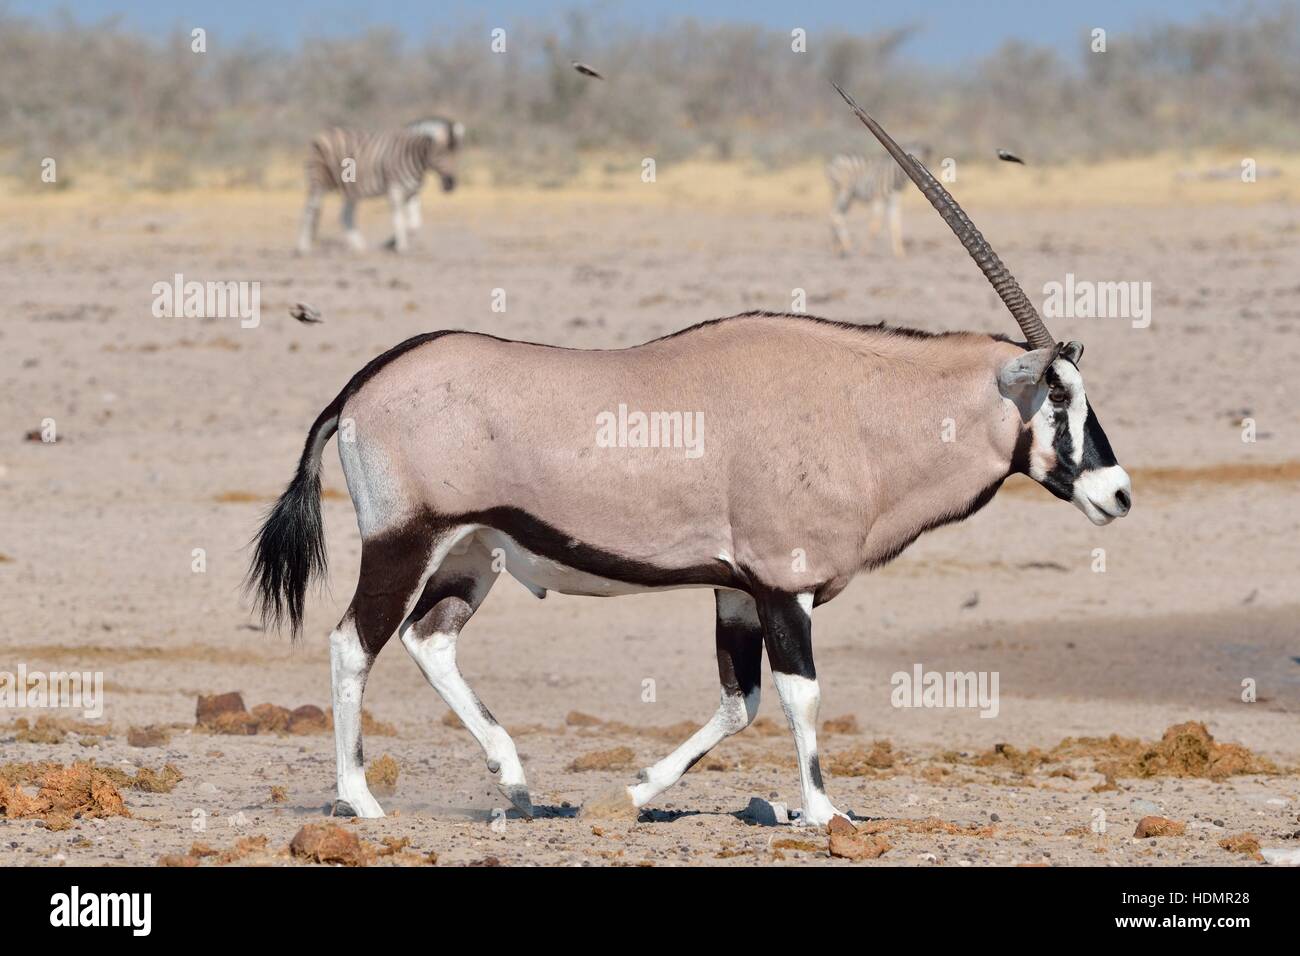 Gemsbok (Oryx gazella), gemsbuck marche sur sol aride, Etosha National Park, Namibie Banque D'Images